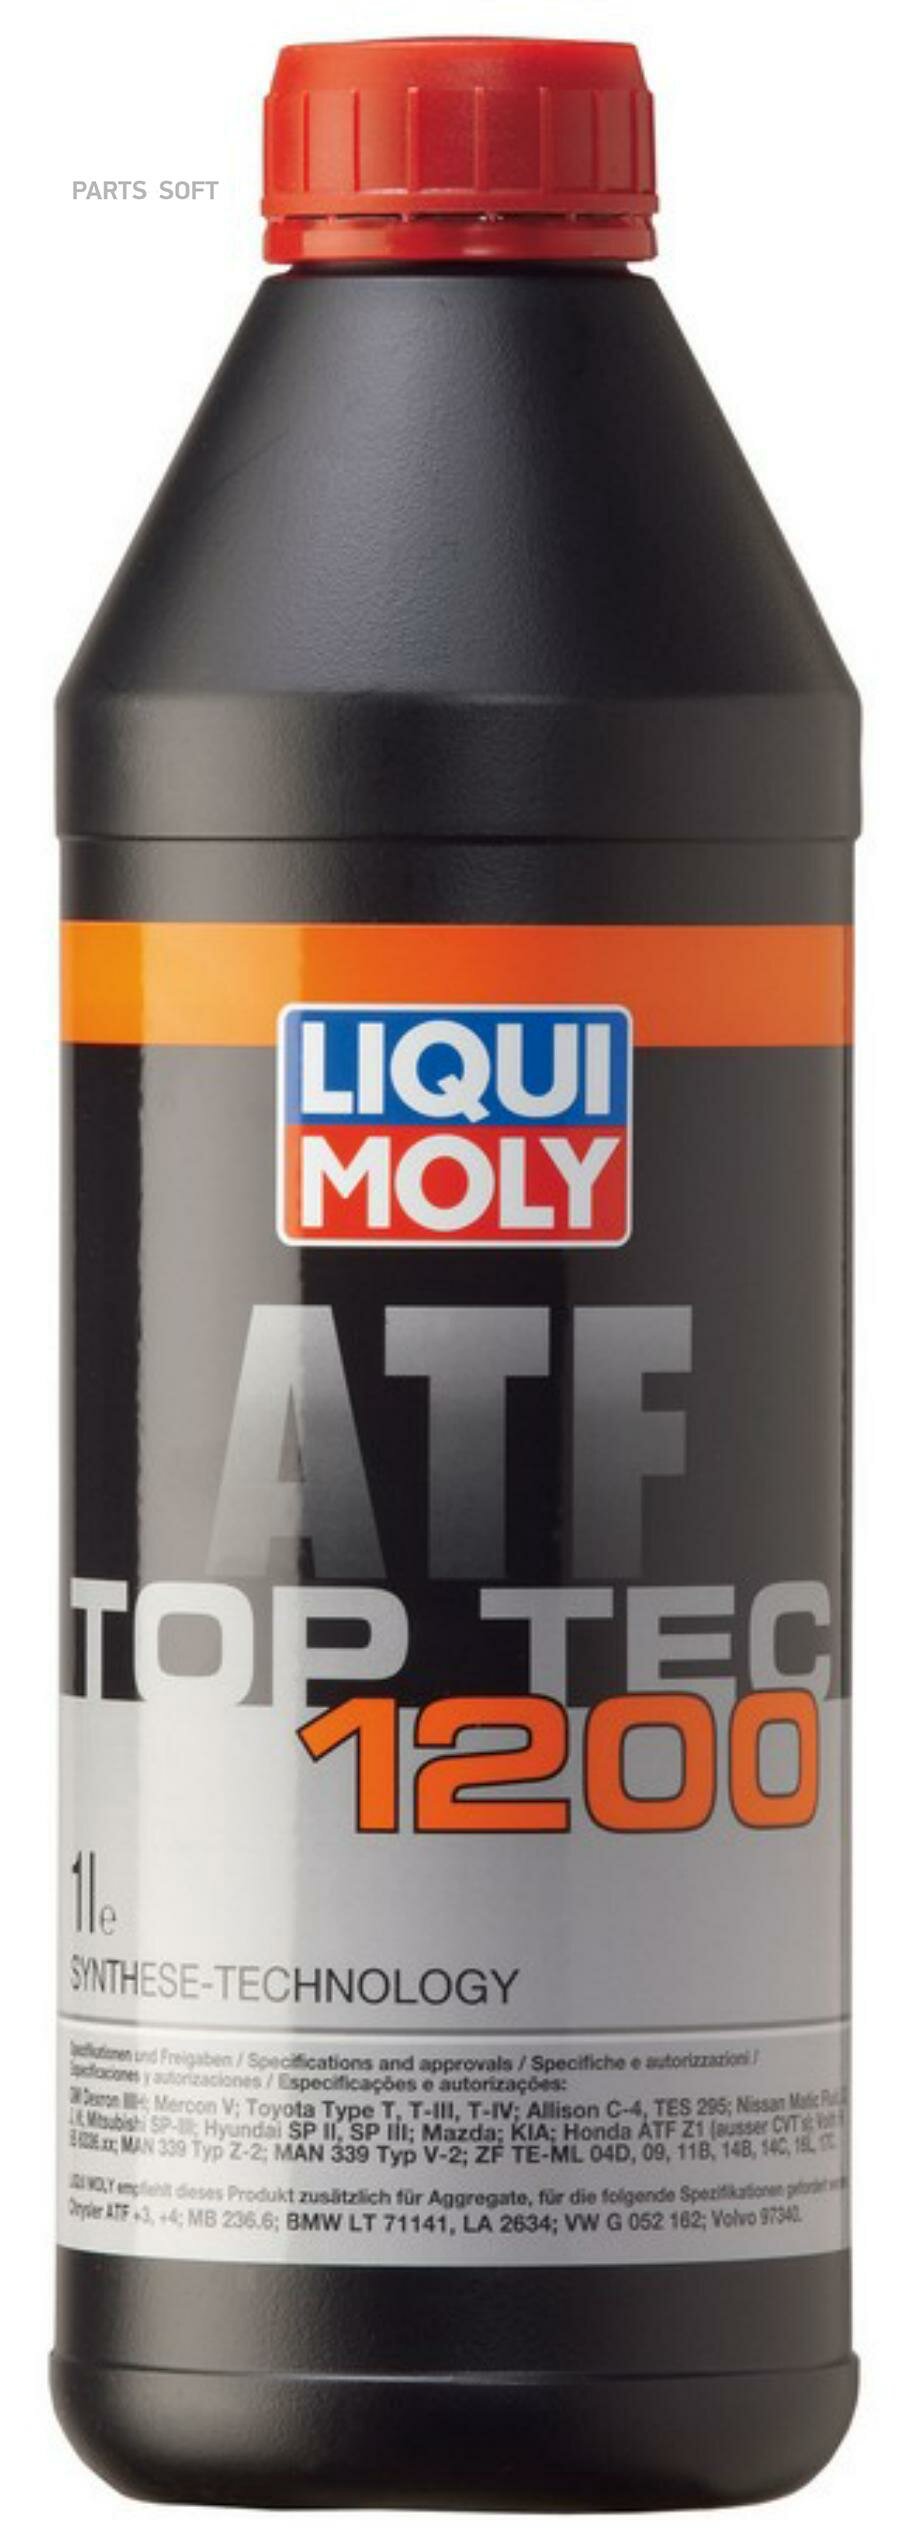 LIQUI MOLY 3681 масло для АКПП Top Tec ATF 1200 (1L)